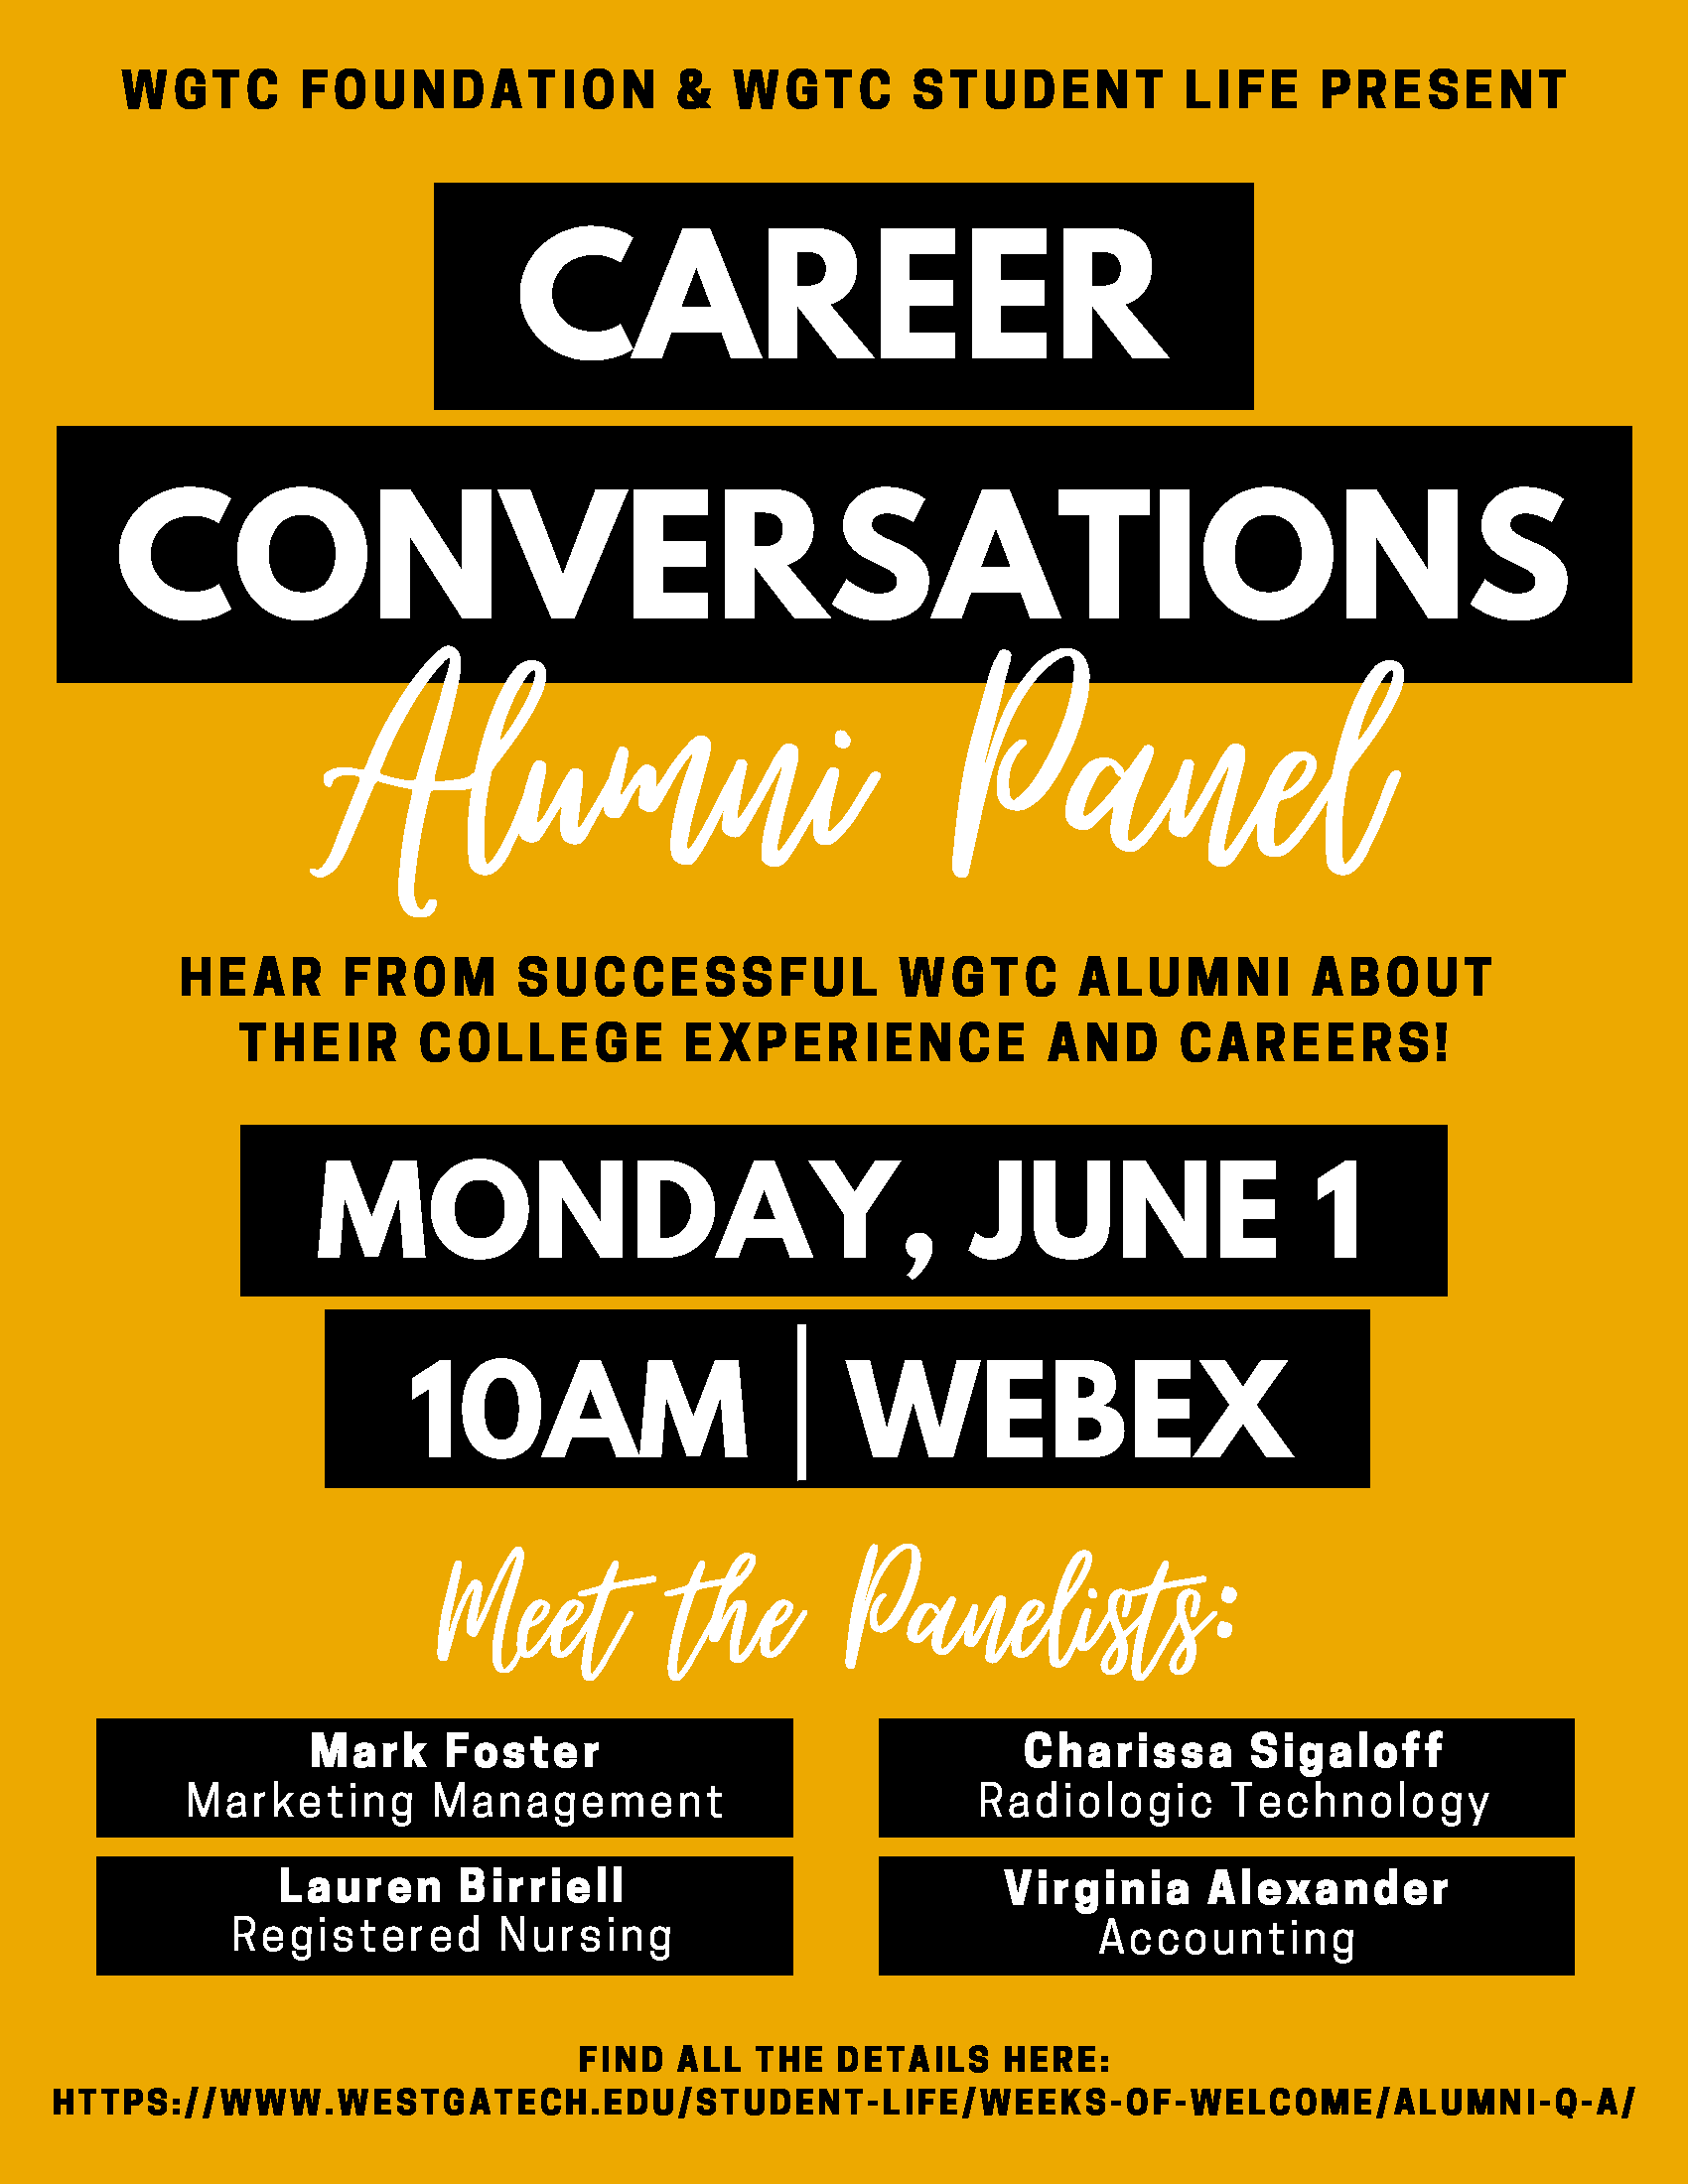 career conversations alumni panel monday june 1 10 am webex, panelists are mark foster, lauren birriell, charisssa sigaloff, virgina alexander.